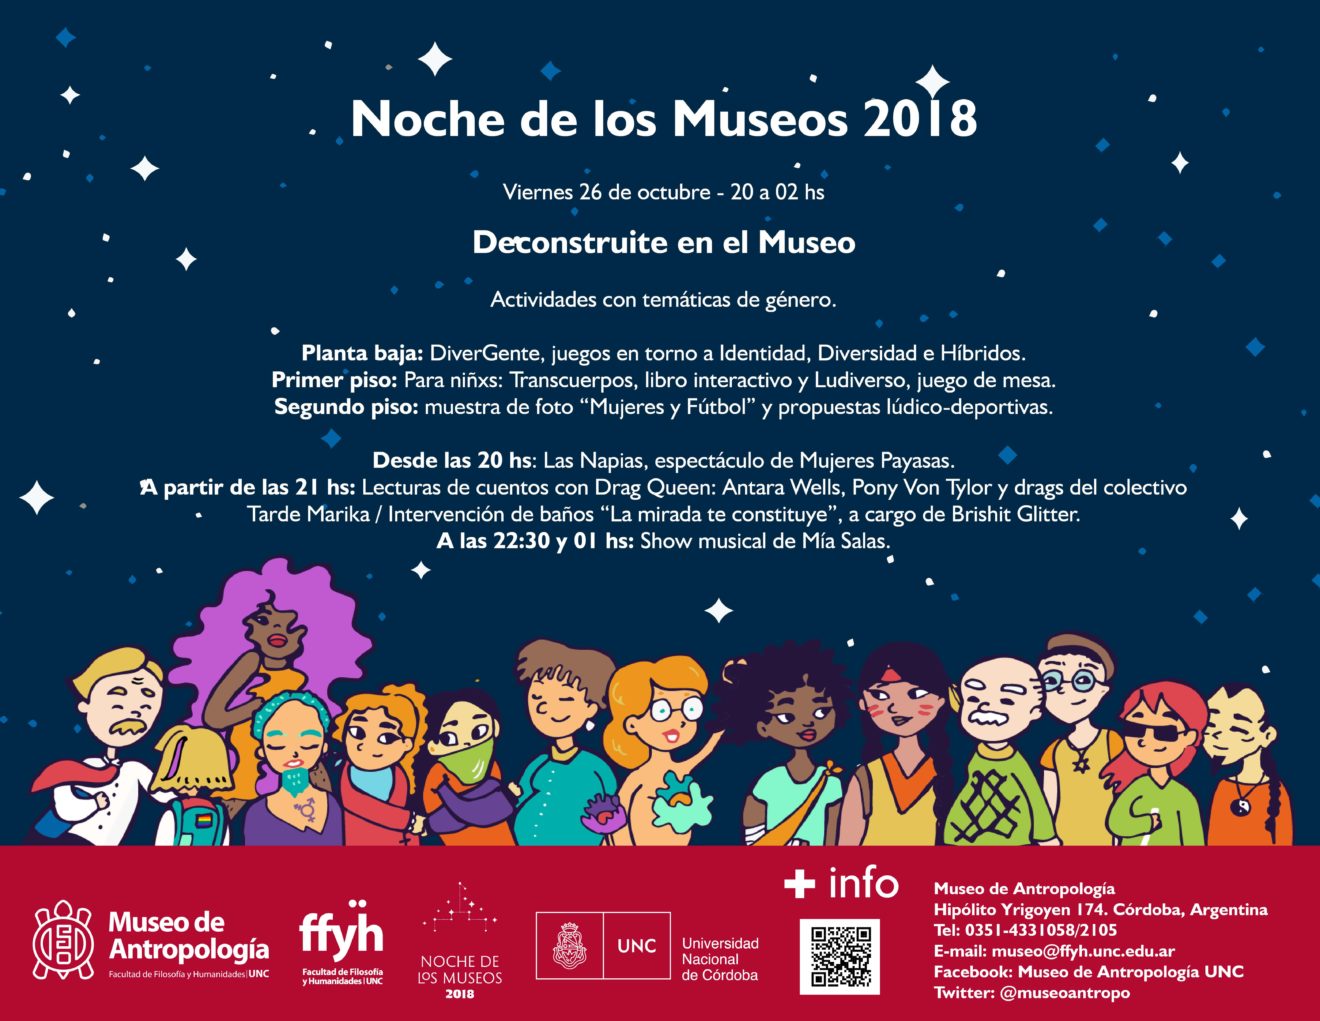 Noche de los Museos 2018: “Deconstruite en el Museo”